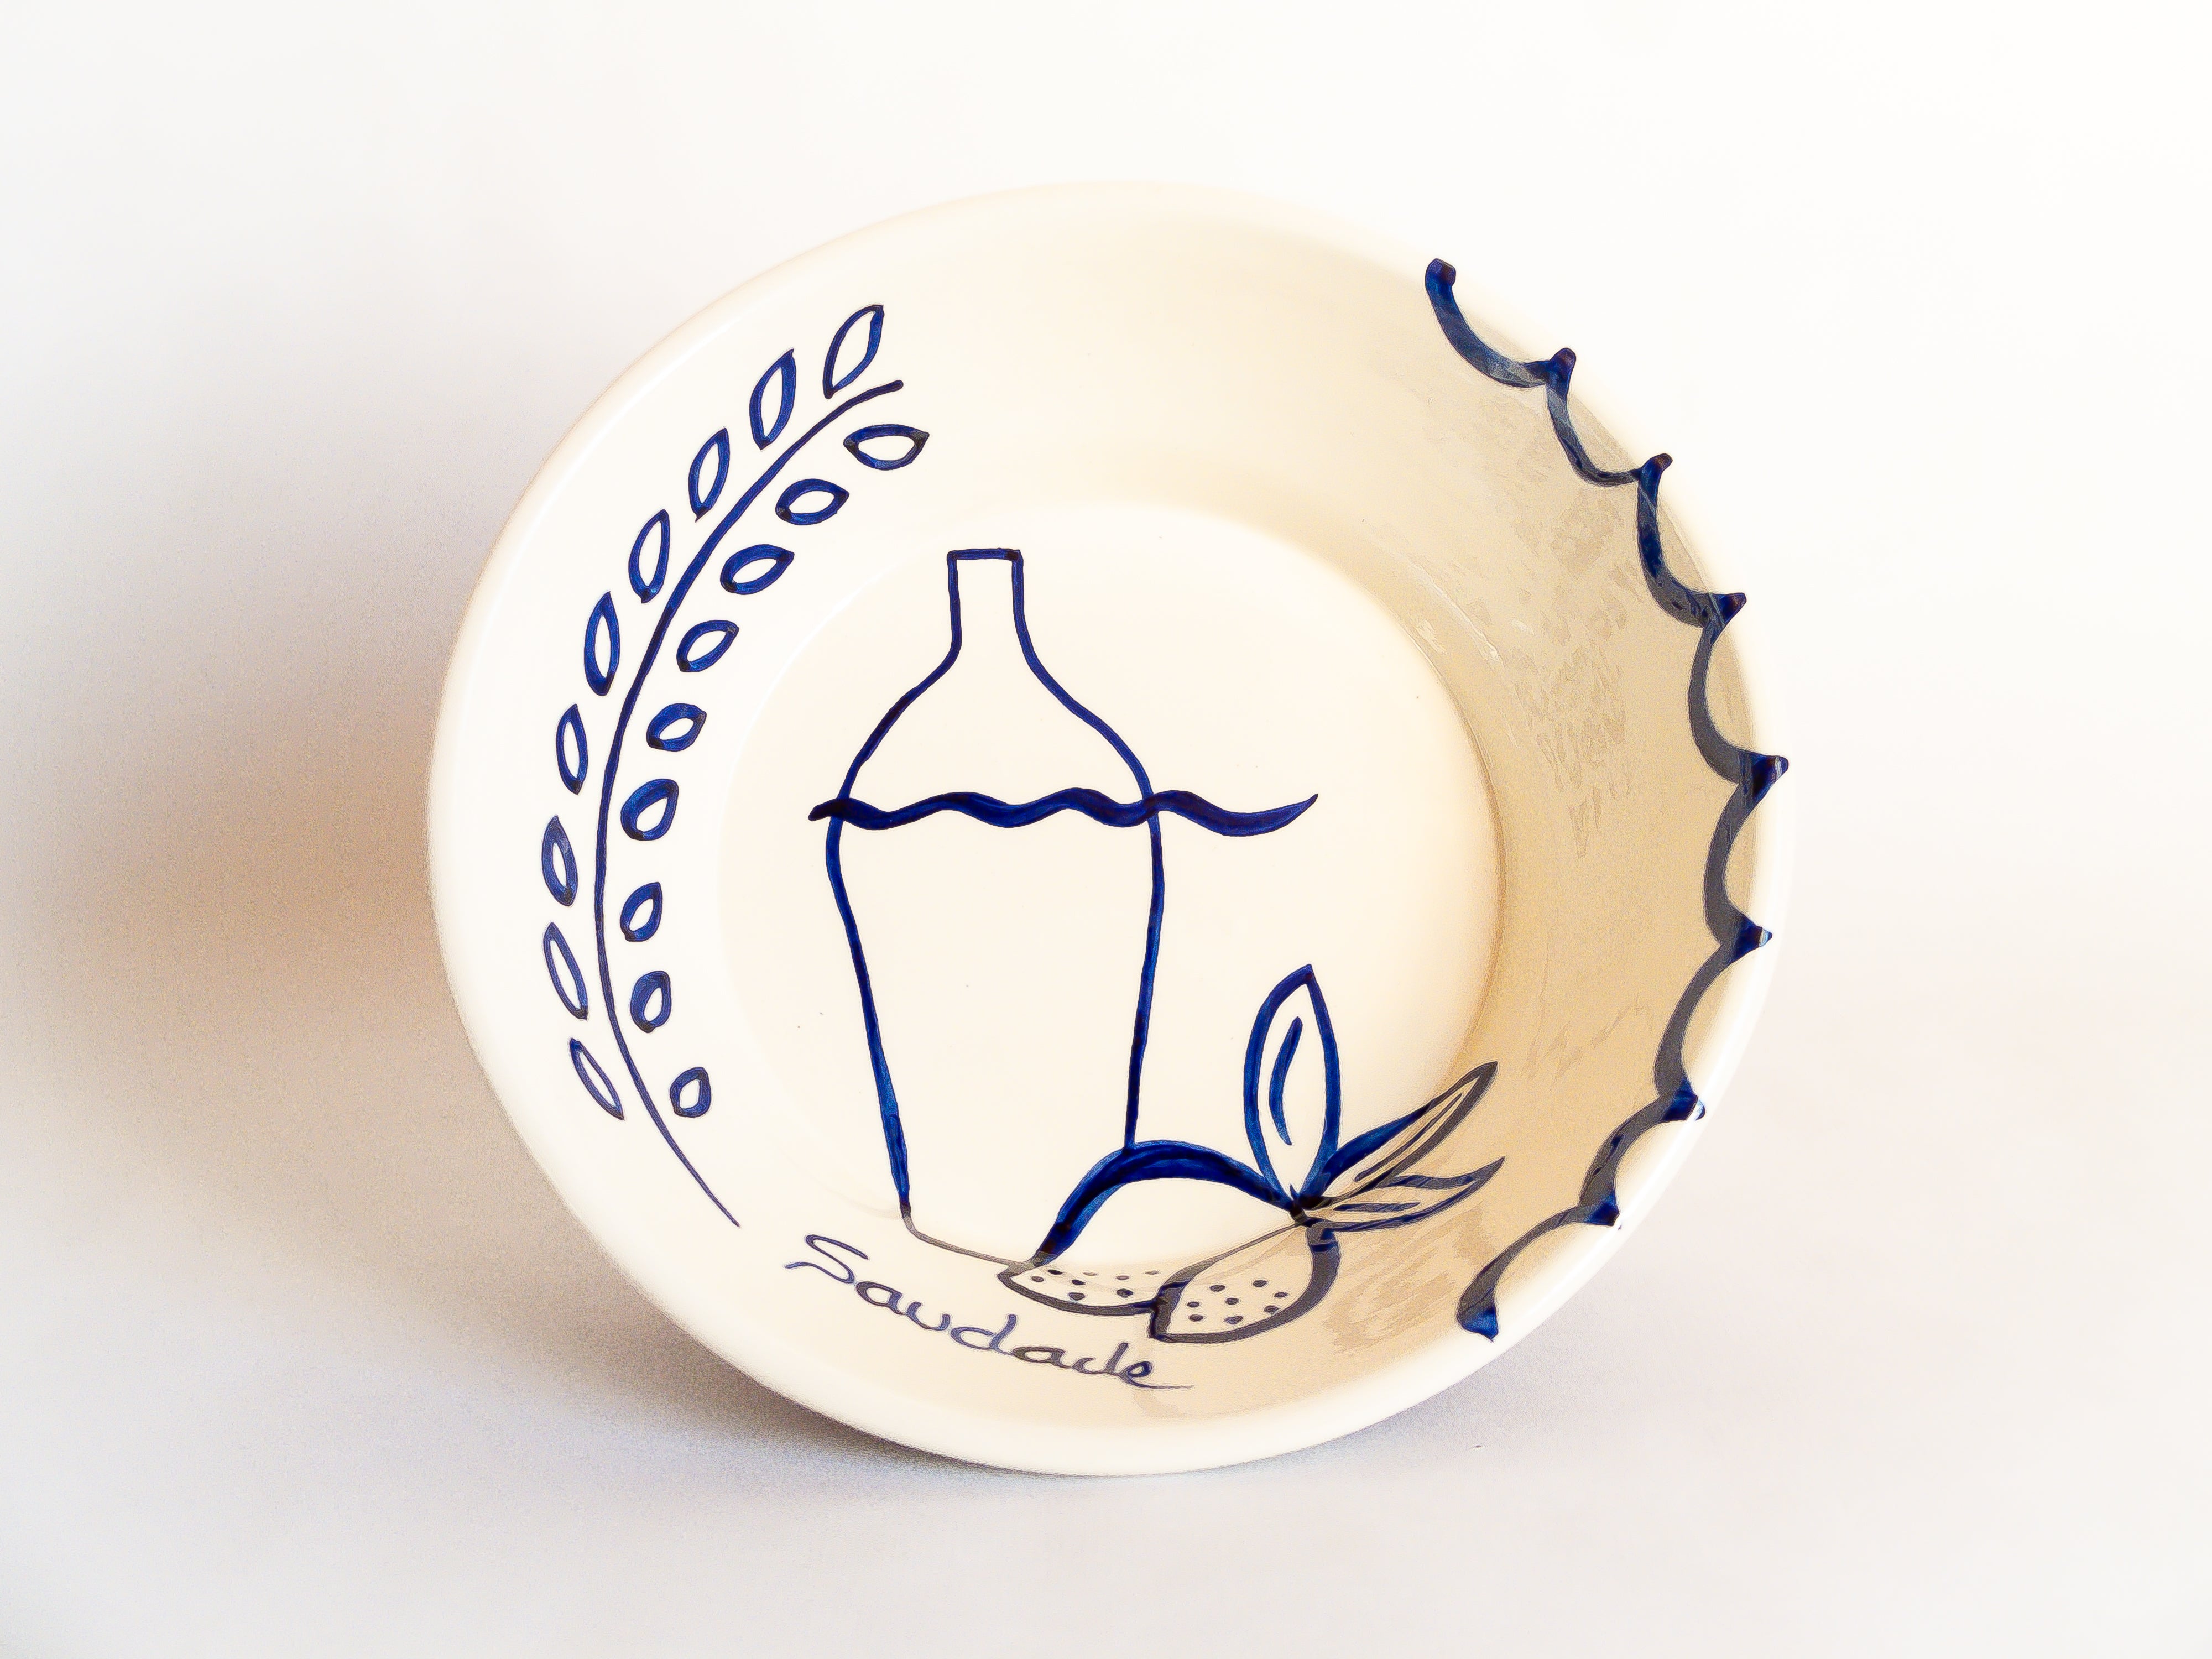 Saladier en céramique aux illustrations élégantes qui nous font voyager au Portugal. Vaisselle fabriquée artisanalement au Portugal.